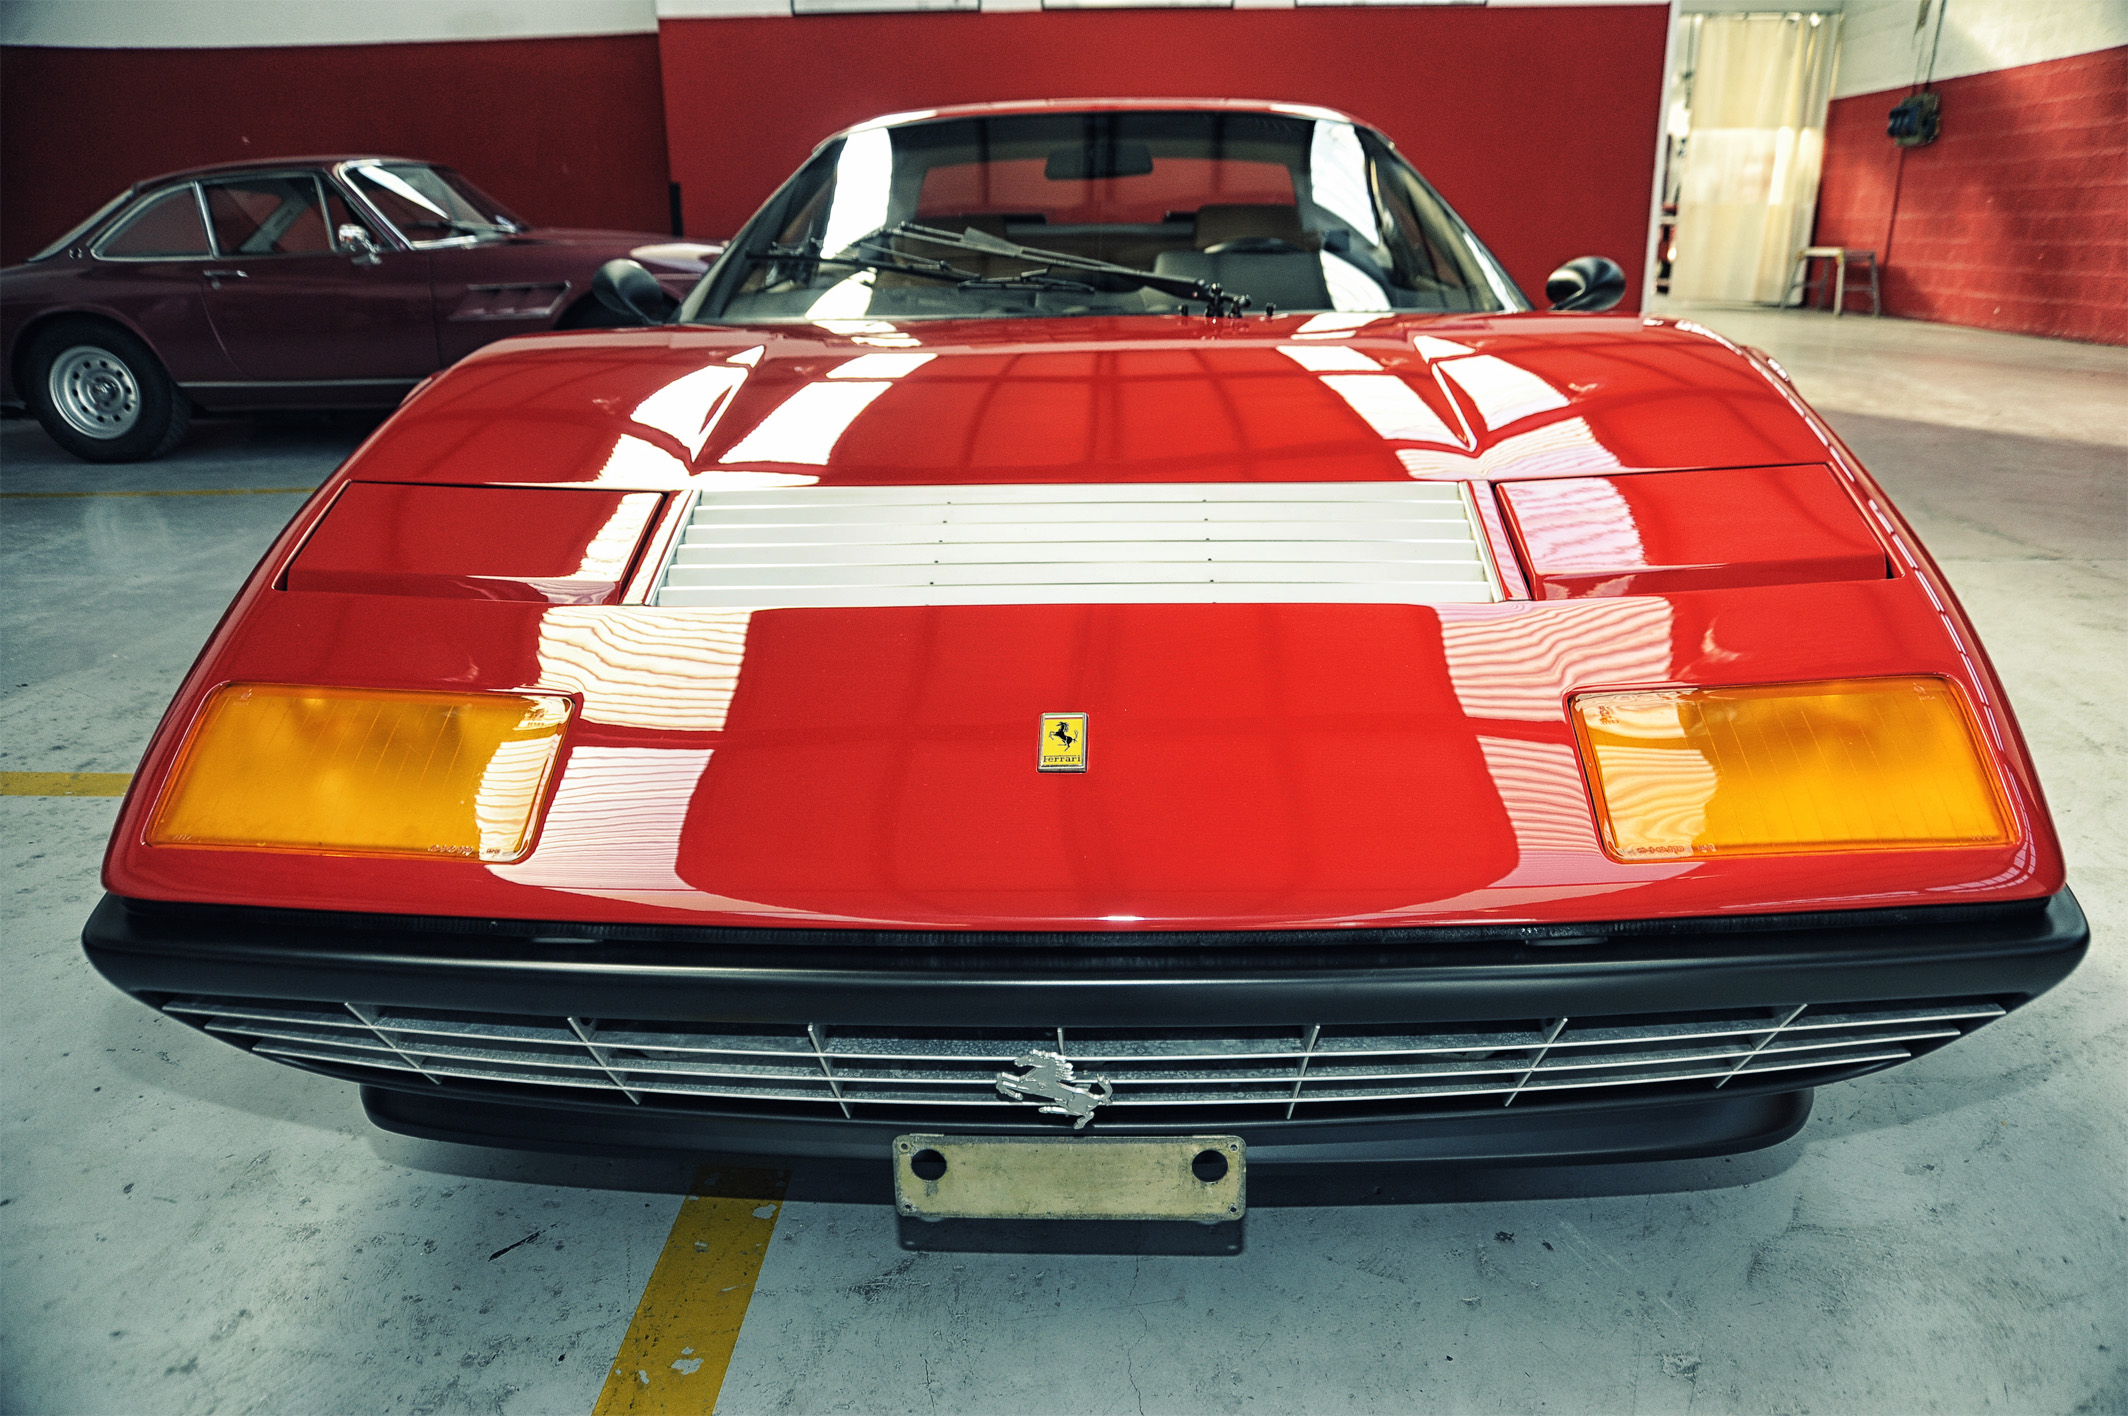 Ferrari BB 512